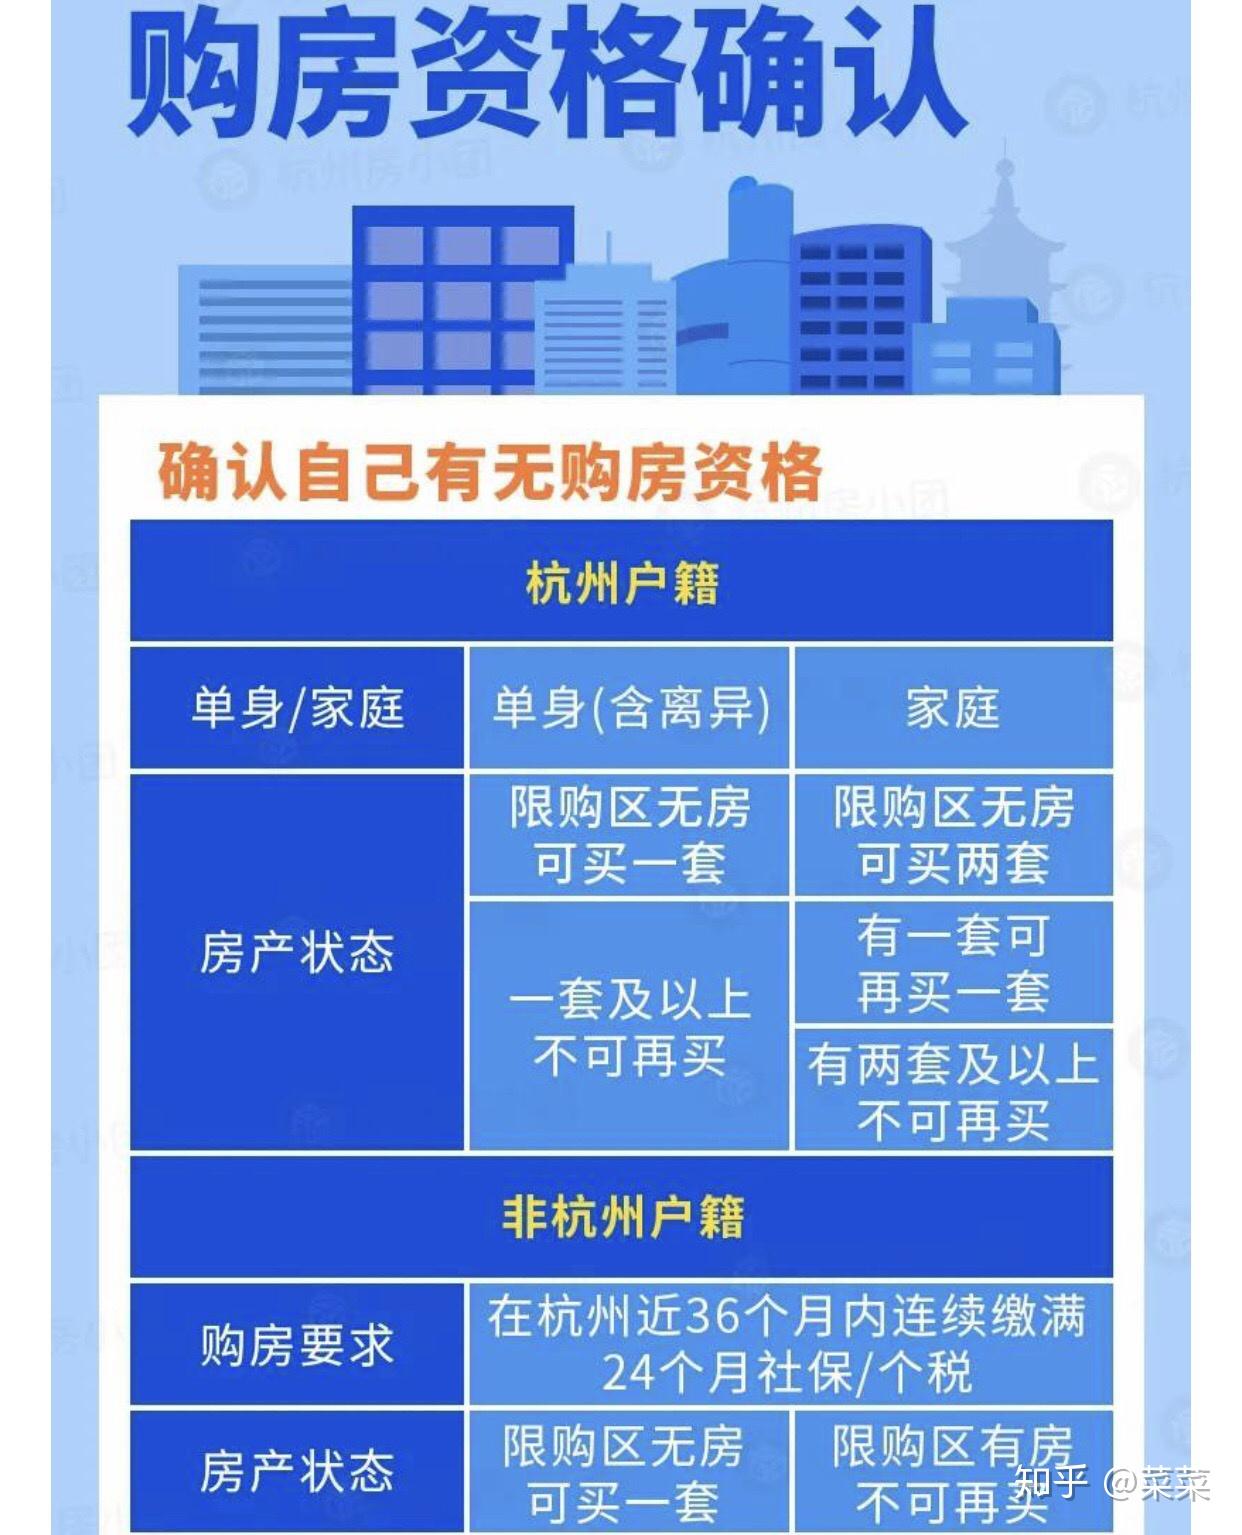 一文看懂2023杭州最新购房政策！购房资格、税费、首付比例、落户要求... - 知乎